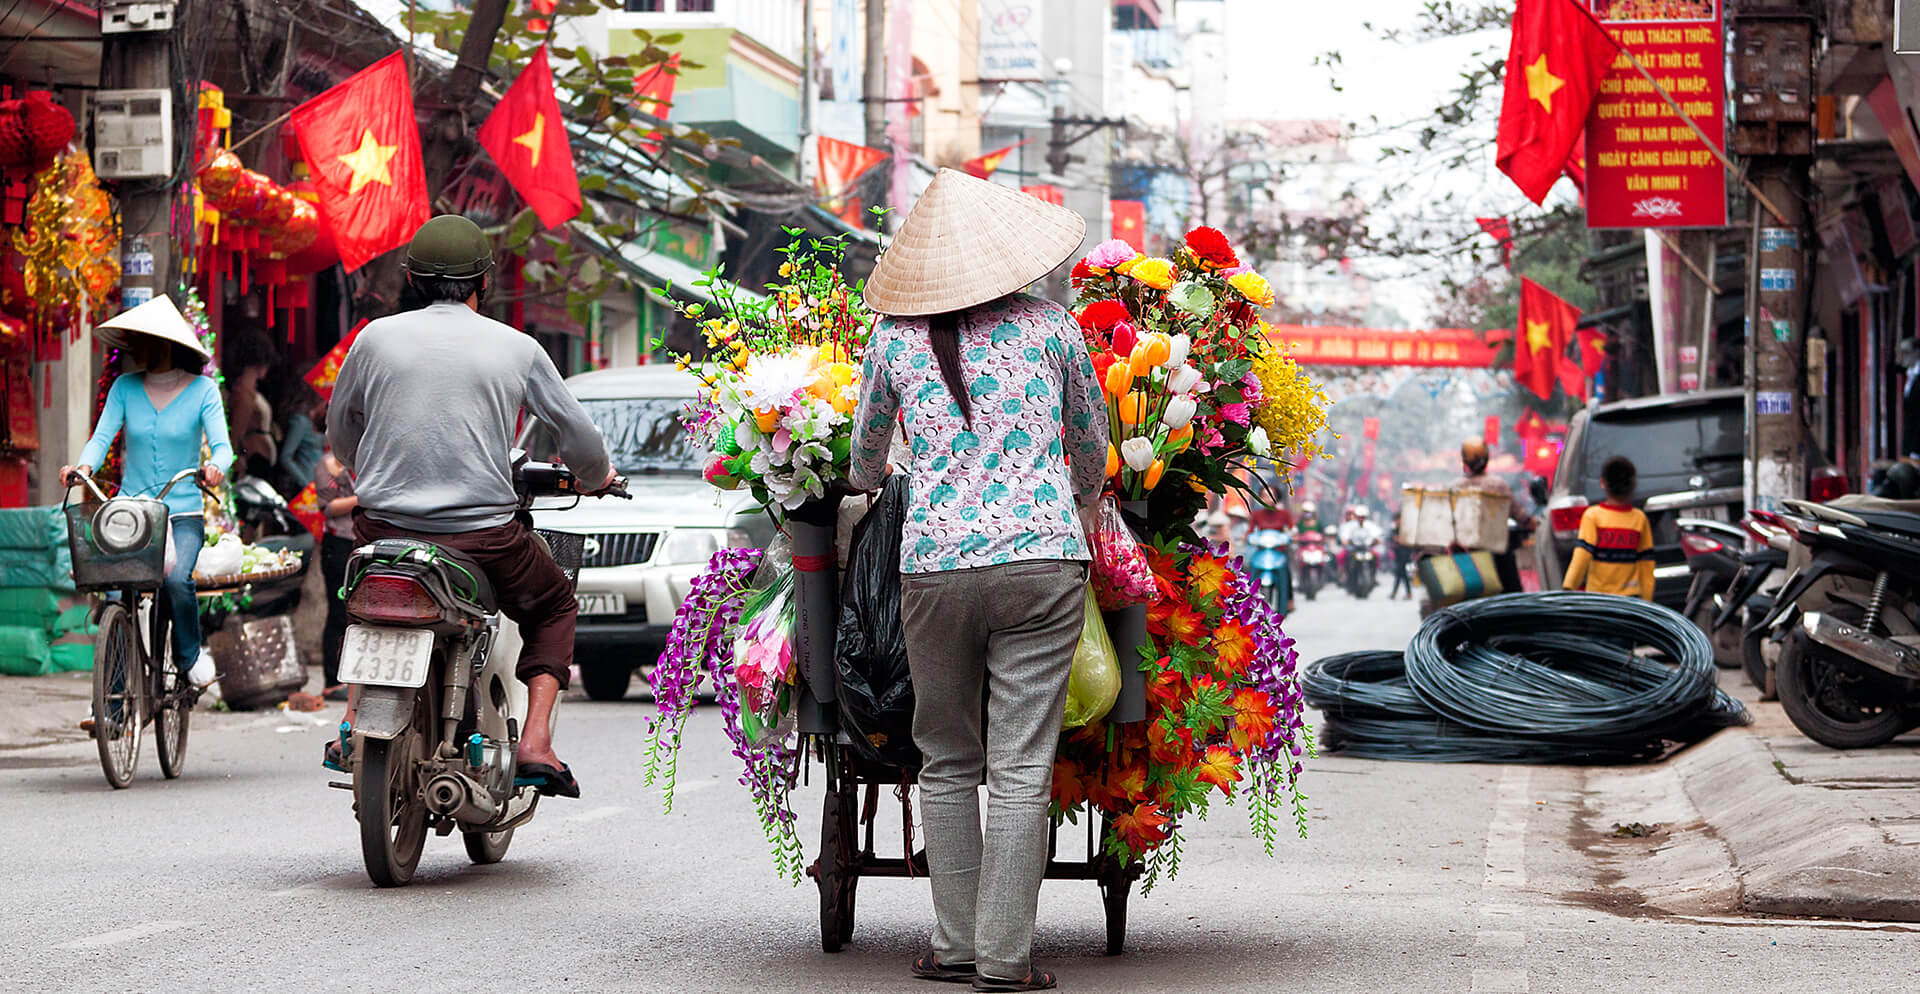 Tour culturale di Hanoi – 3 giorni / 2 notti